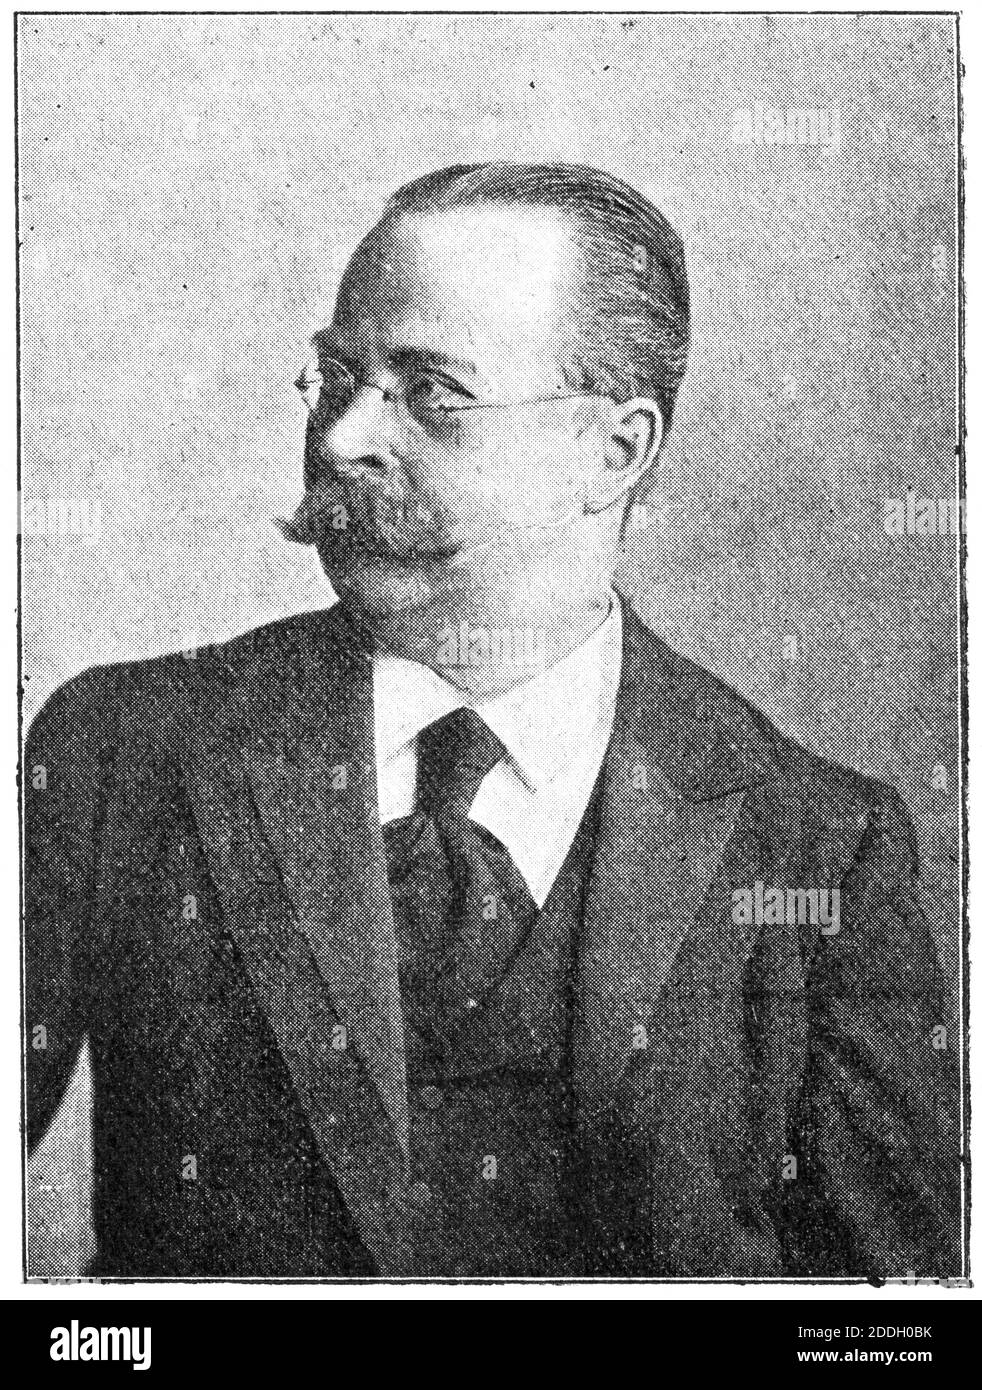 Portrait of Ernst von Wildenbruch - a German poet and dramatist. Illustration of the 19th century. White background. Stock Photo